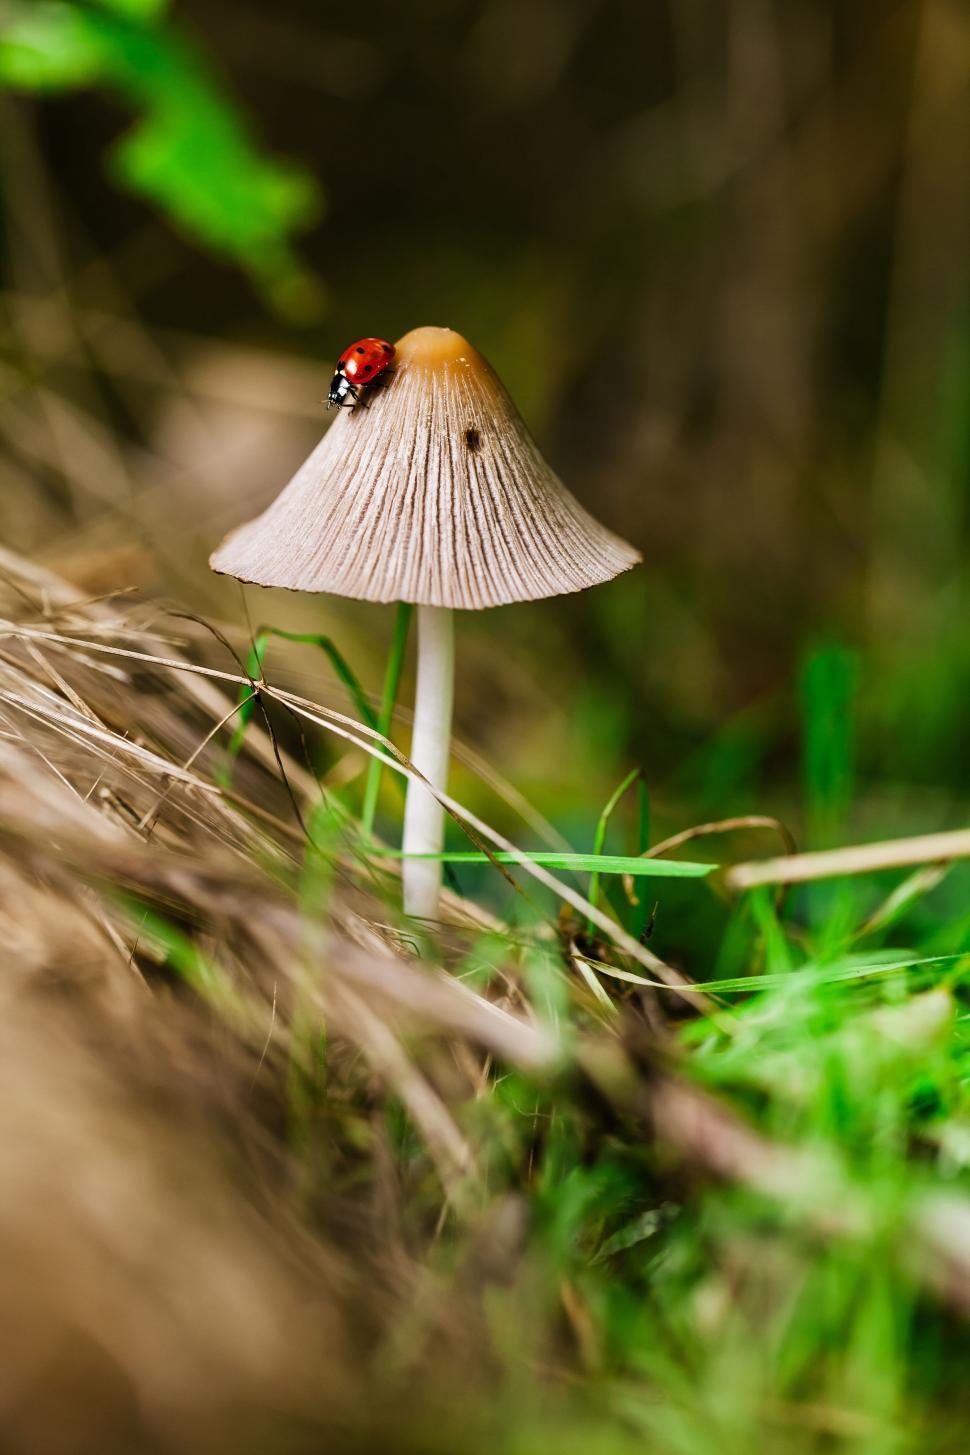 Free Image of Small White Mushroom With Ladybug 